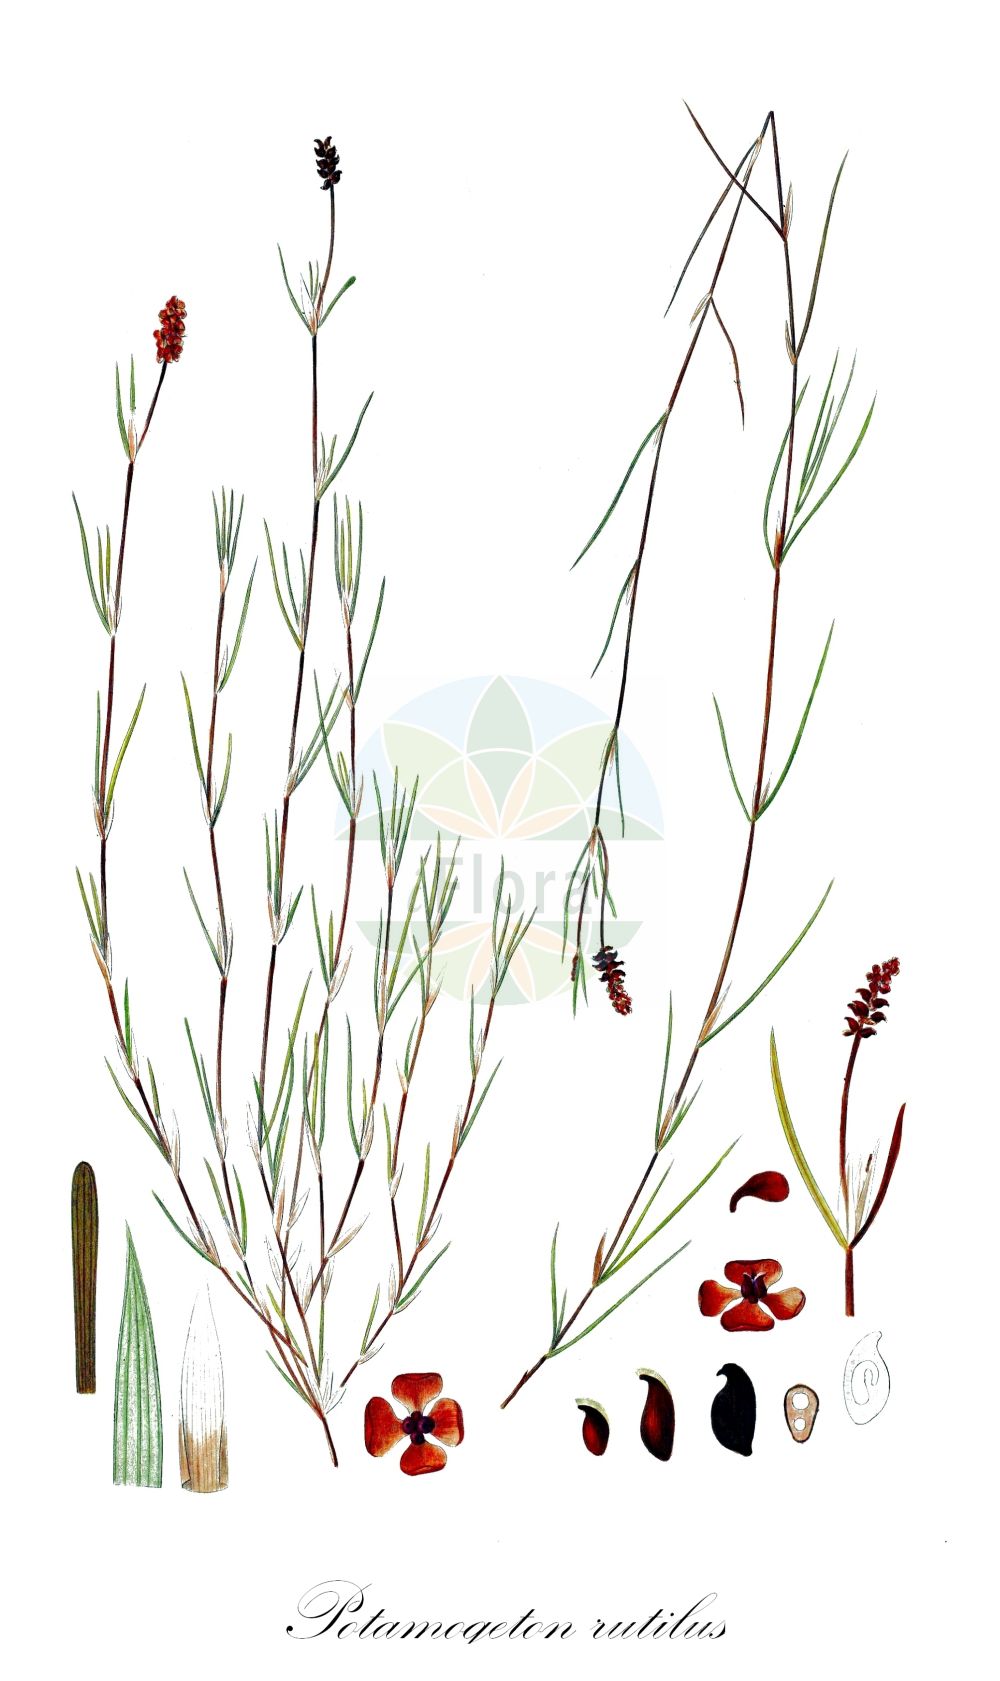 Historische Abbildung von Potamogeton rutilus (Rötliches Laichkraut - Shetland Pondweed). Das Bild zeigt Blatt, Bluete, Frucht und Same. ---- Historical Drawing of Potamogeton rutilus (Rötliches Laichkraut - Shetland Pondweed). The image is showing leaf, flower, fruit and seed.(Potamogeton rutilus,Rötliches Laichkraut,Shetland Pondweed,Potamogeton rutilus,Roetliches Laichkraut,Shetland Pondweed,Potamogeton,Laichkraut,Pondweed,Potamogetonaceae,Laichkrautgewächse,Pondweed family,Blatt,Bluete,Frucht,Same,leaf,flower,fruit,seed,Oeder (1761-1883))